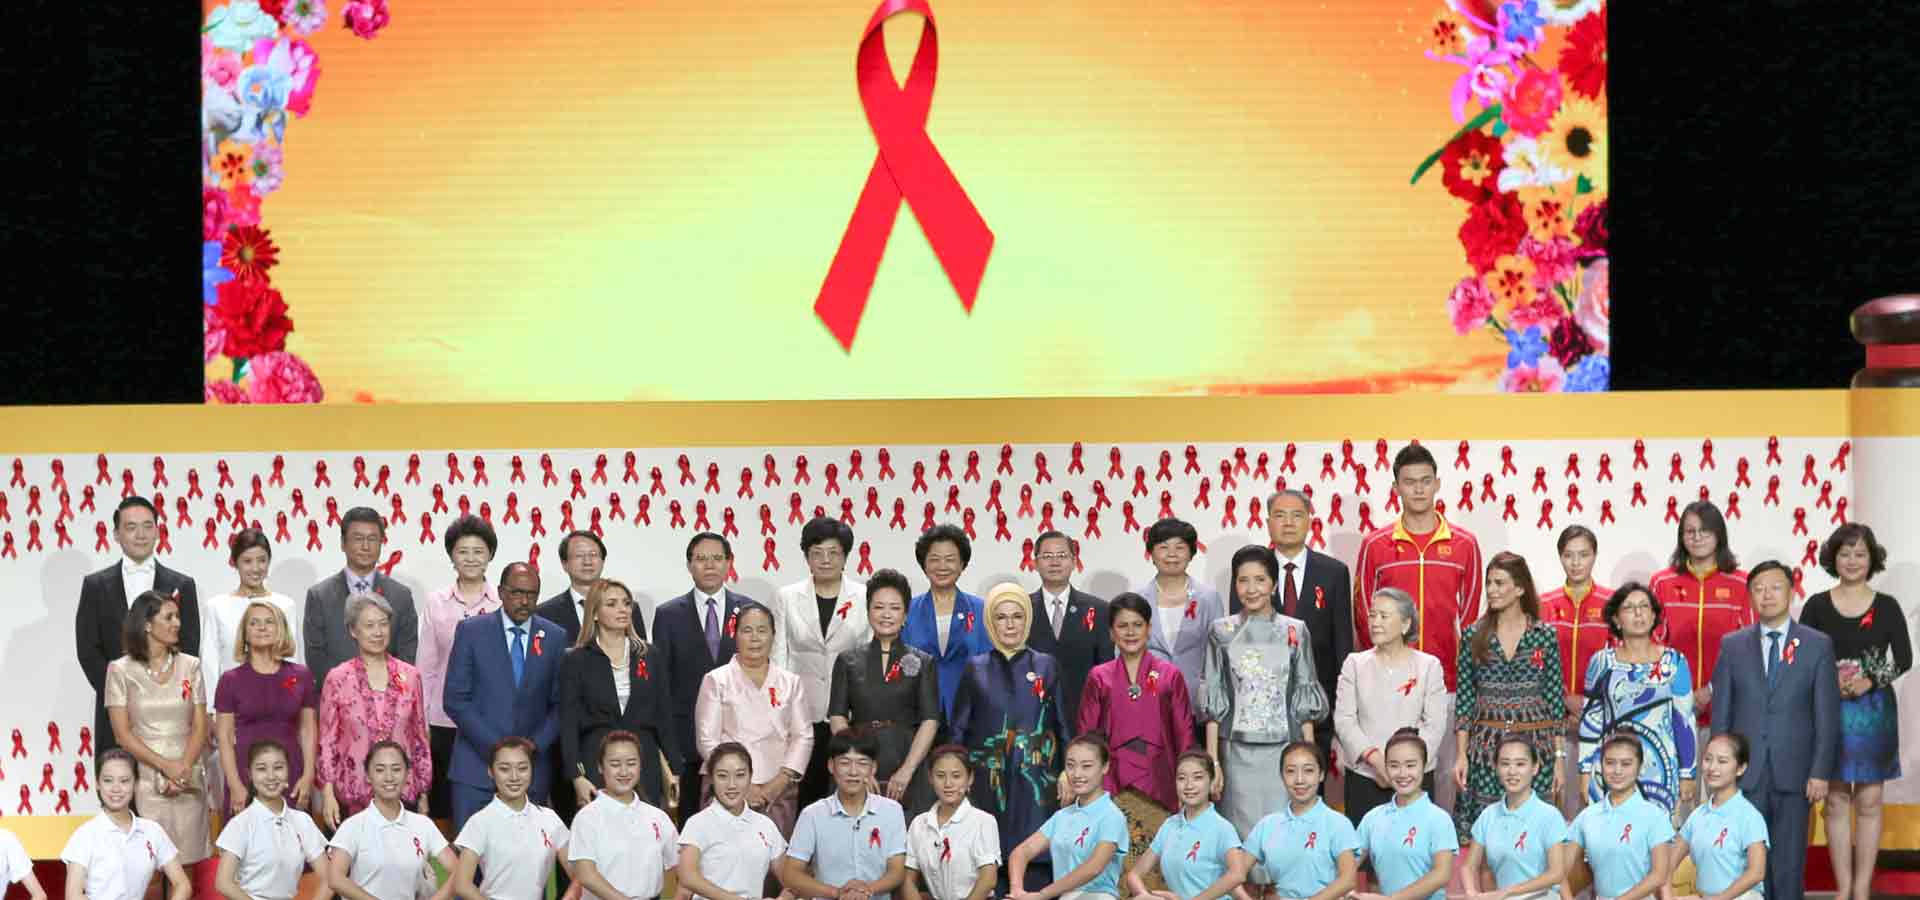 彭丽媛同二十国集团外方代表团团长夫人共同出席“艾滋病防治宣传校园行——走进浙江大学”活动